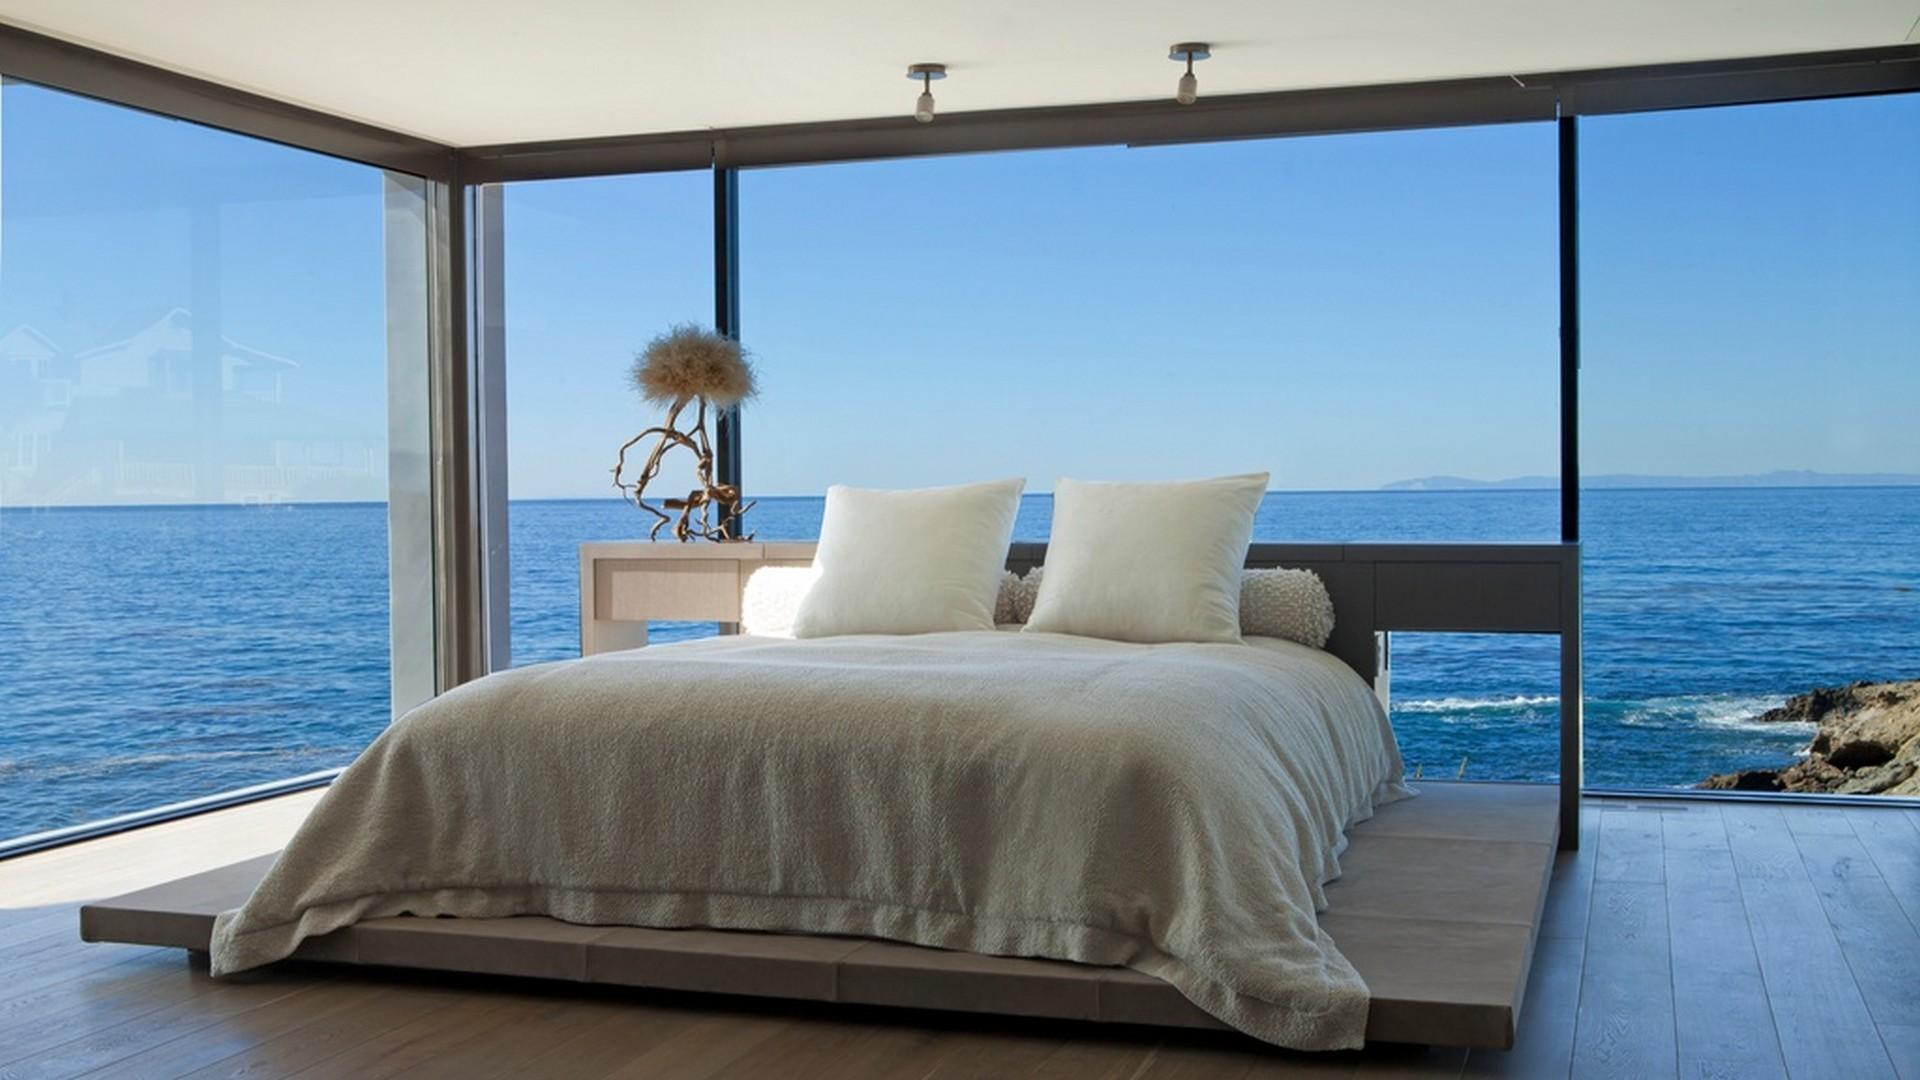 This is nice room. Шикарный вид на море. Спальня с панорамными окнами. Спальня с видом на океан. Вид на океан.